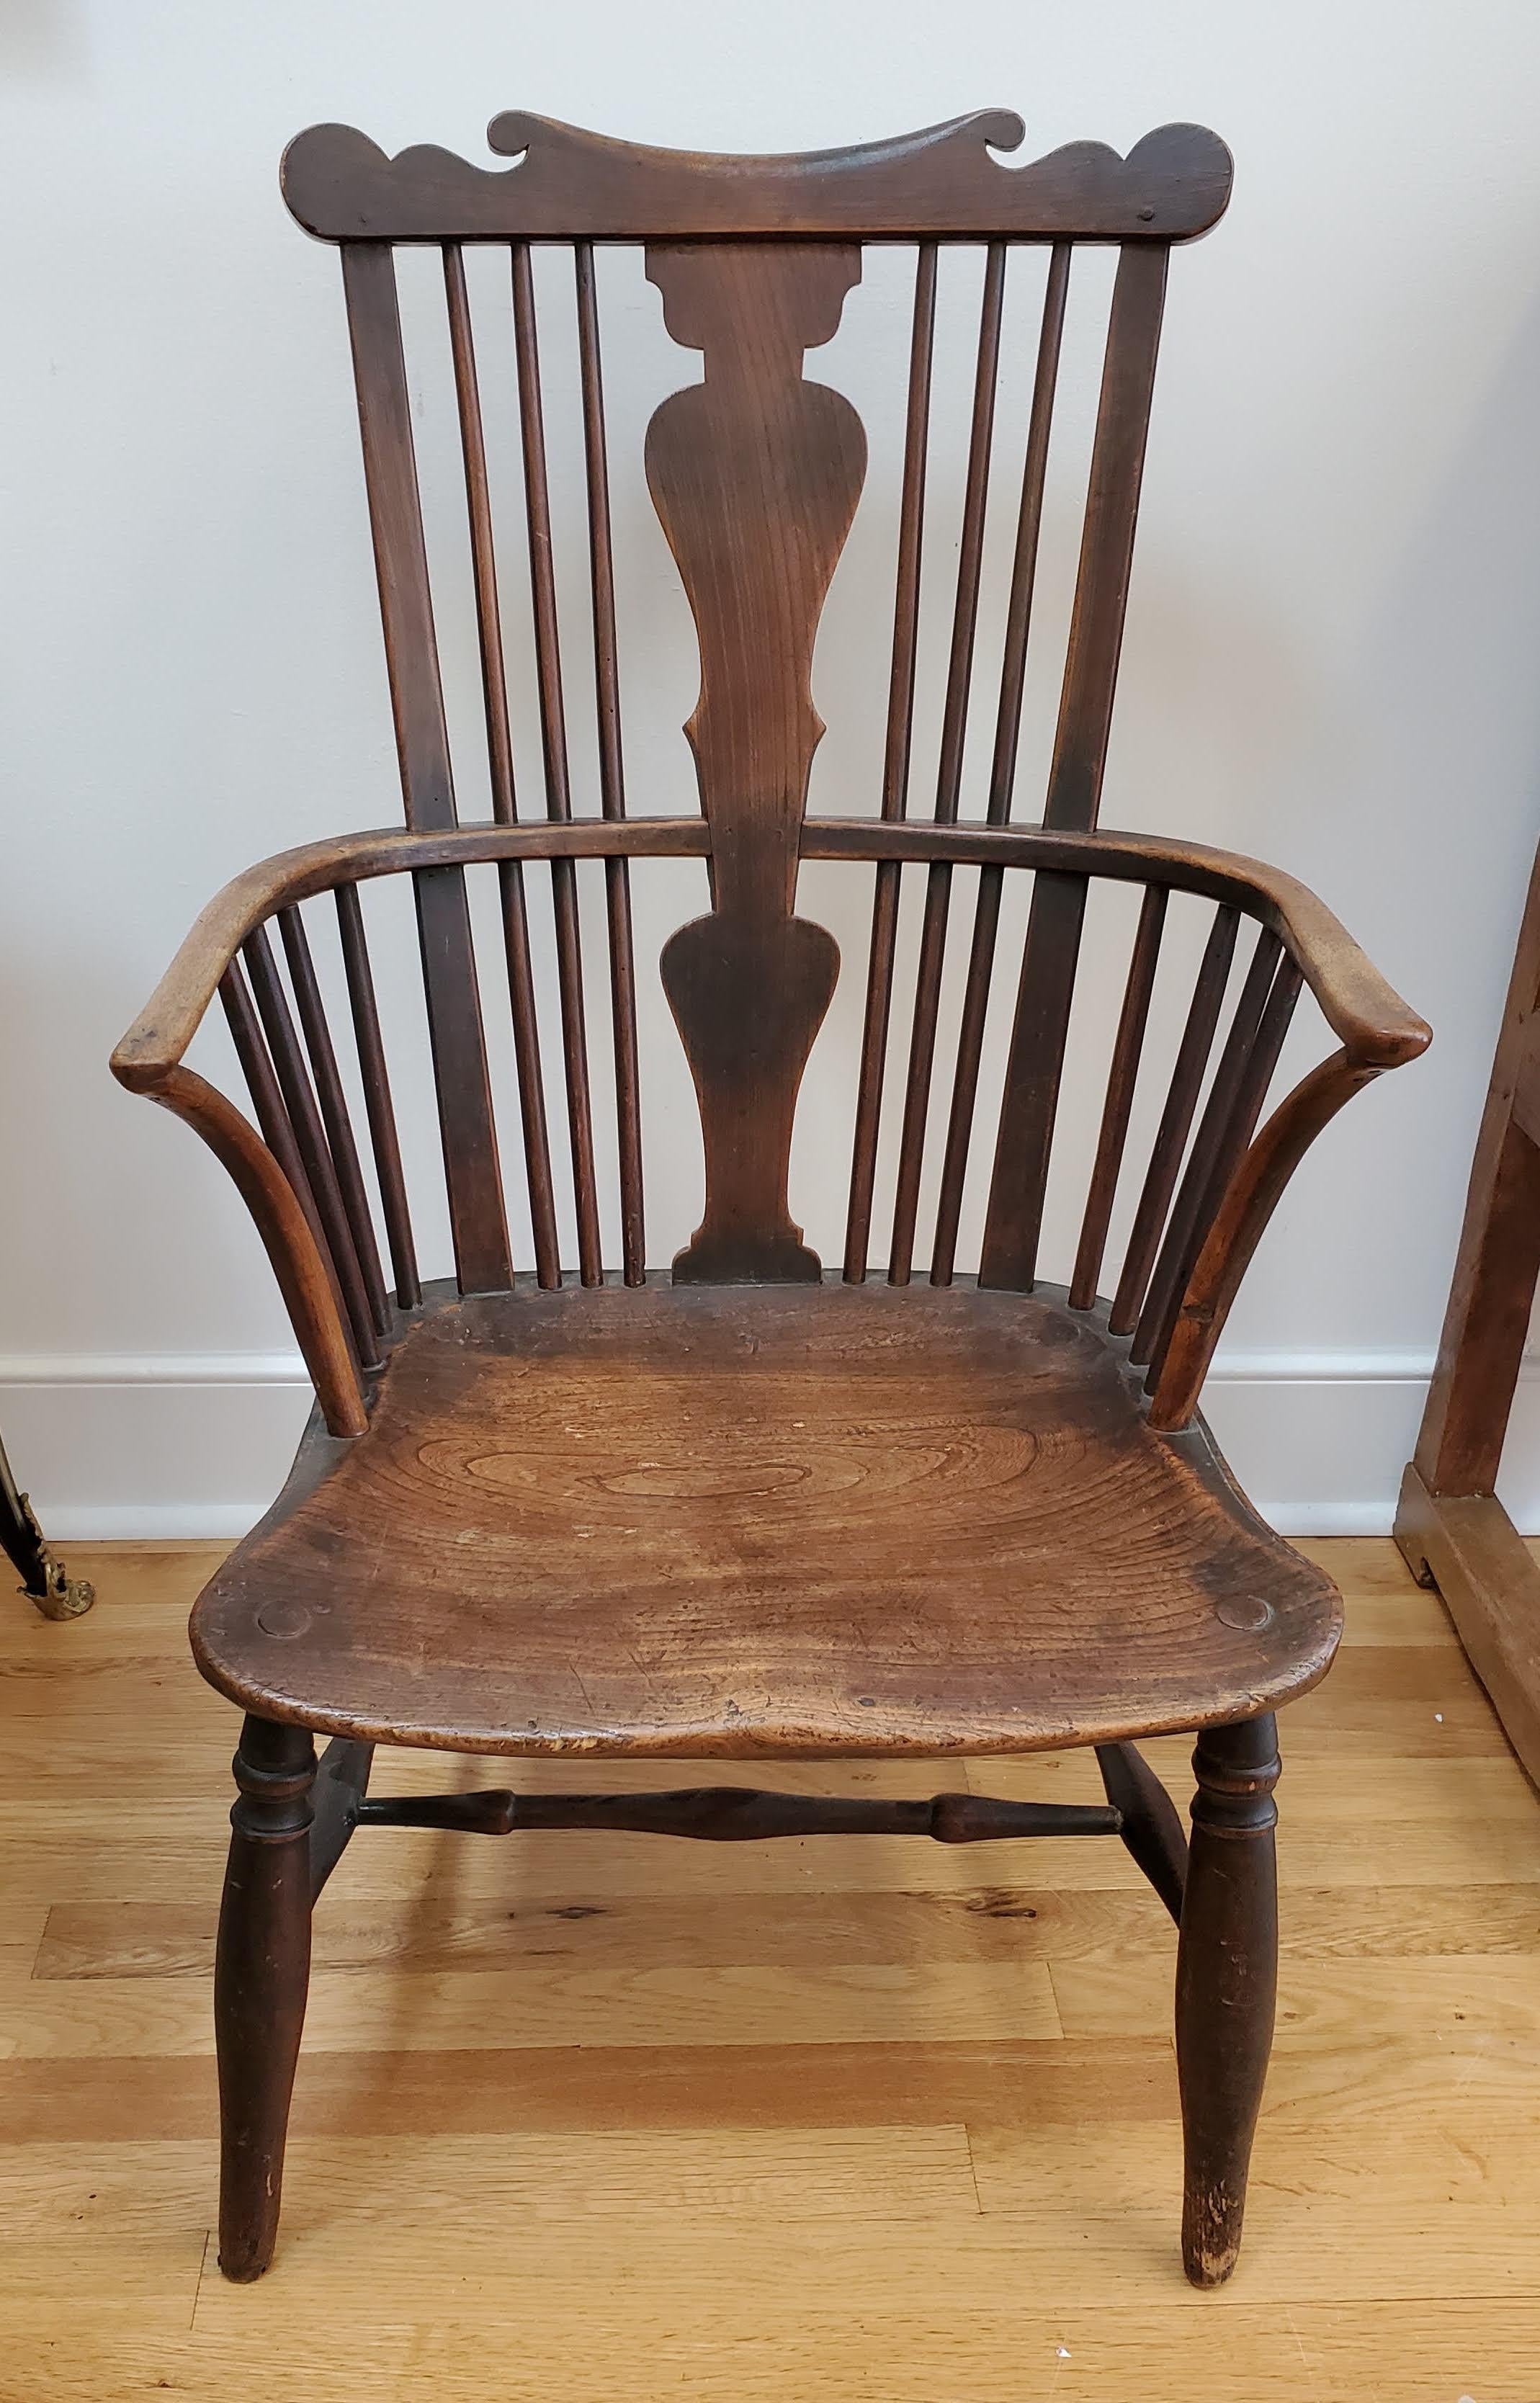 fauteuil Windsor à dossier peigne du 18e siècle. La traverse supérieure en forme de peigne est surmontée d'une douille centrale et d'accoudoirs arqués. L'assise en orme figuré est façonnée et les pieds sont délicatement tournés. Un mélange d'orme,